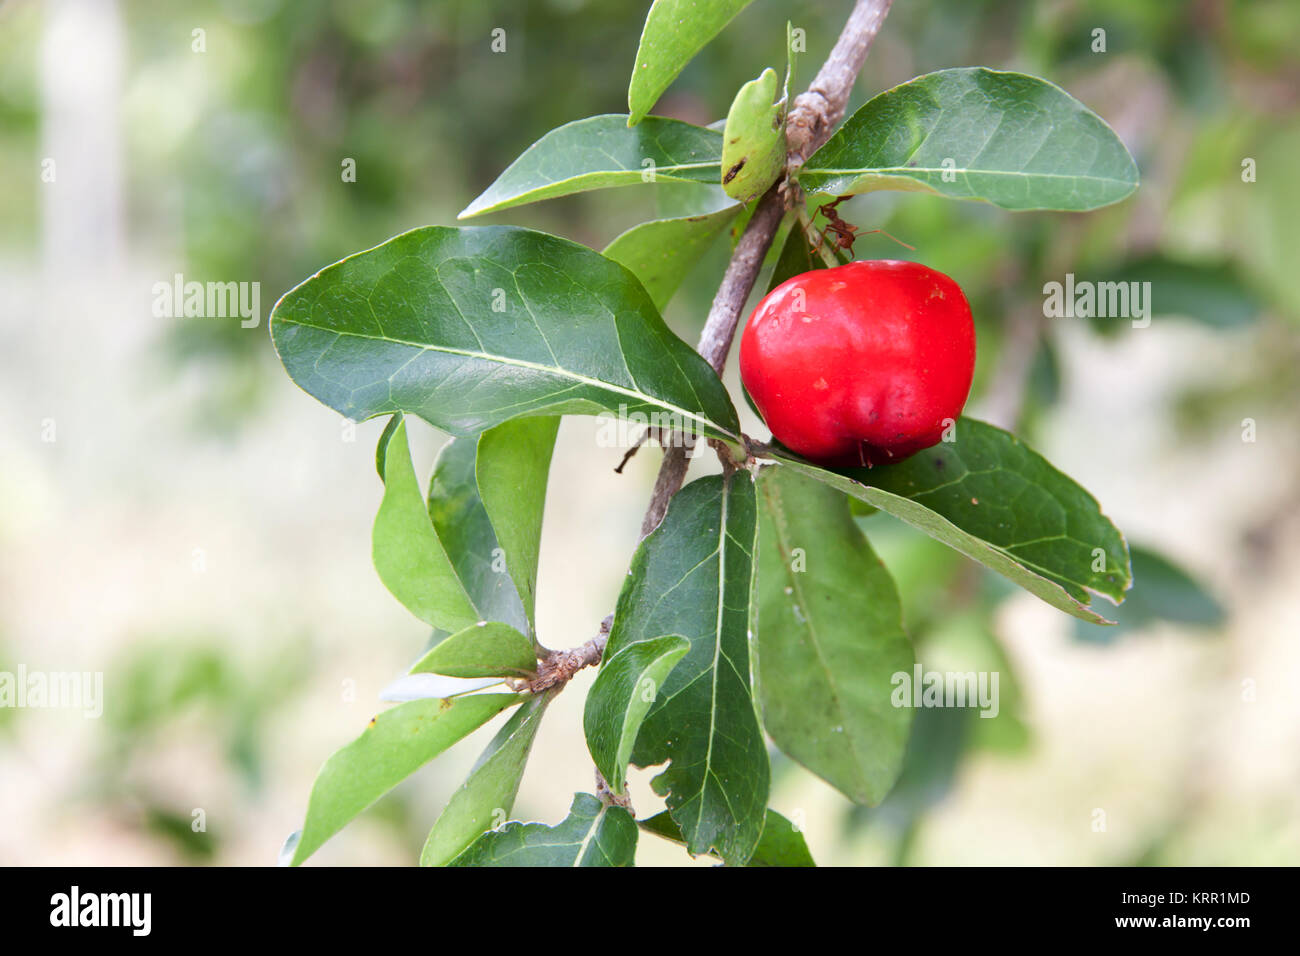 Barbados cherry (Malpighia glabra L.) Stock Photo